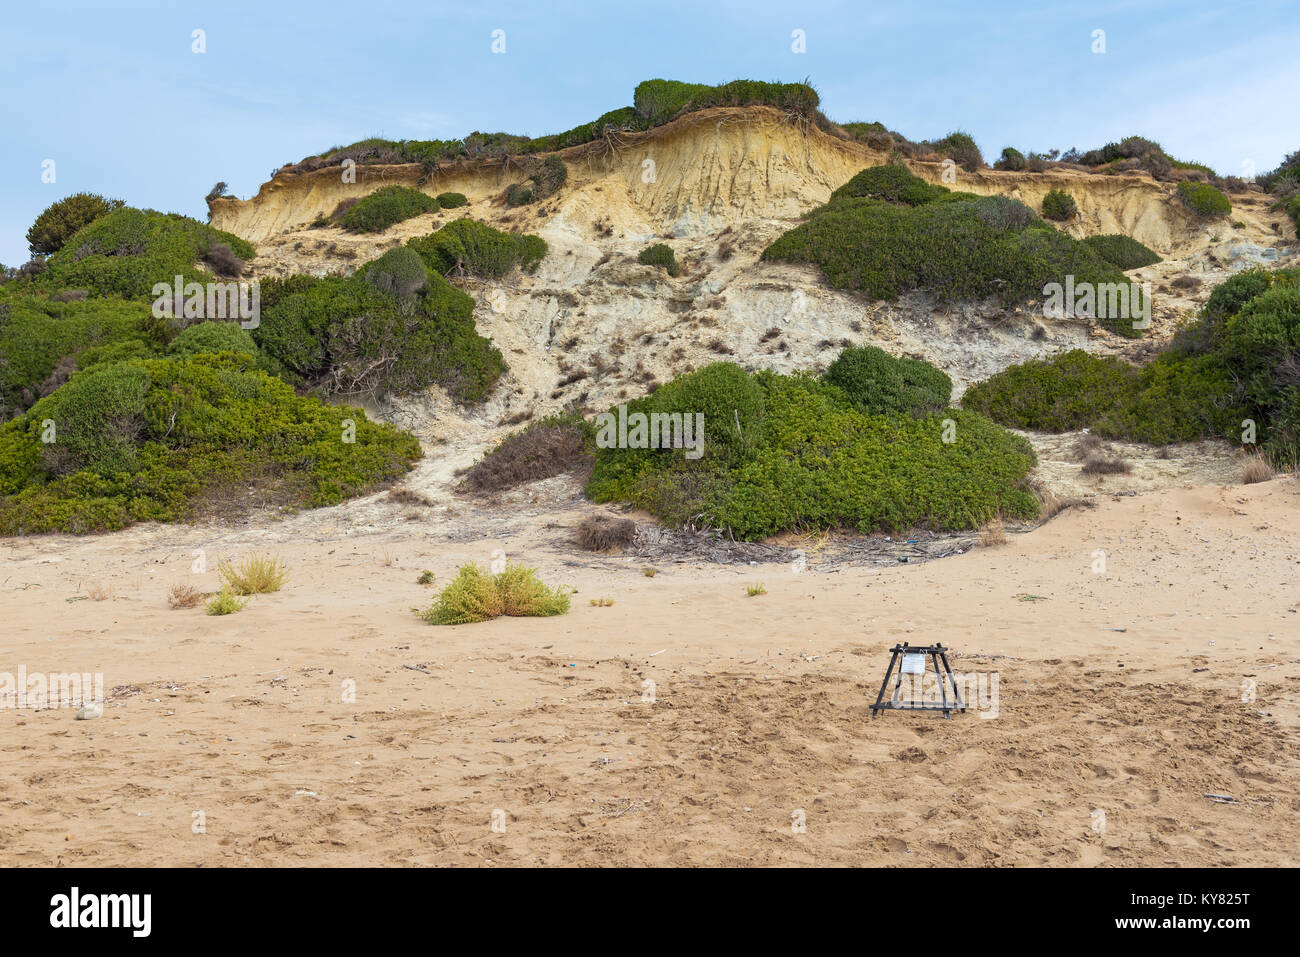 Plage de Gerakas sur Zakynthos Island zone protégée du site de nidification des tortues Caretta Caretta. La Grèce. Banque D'Images